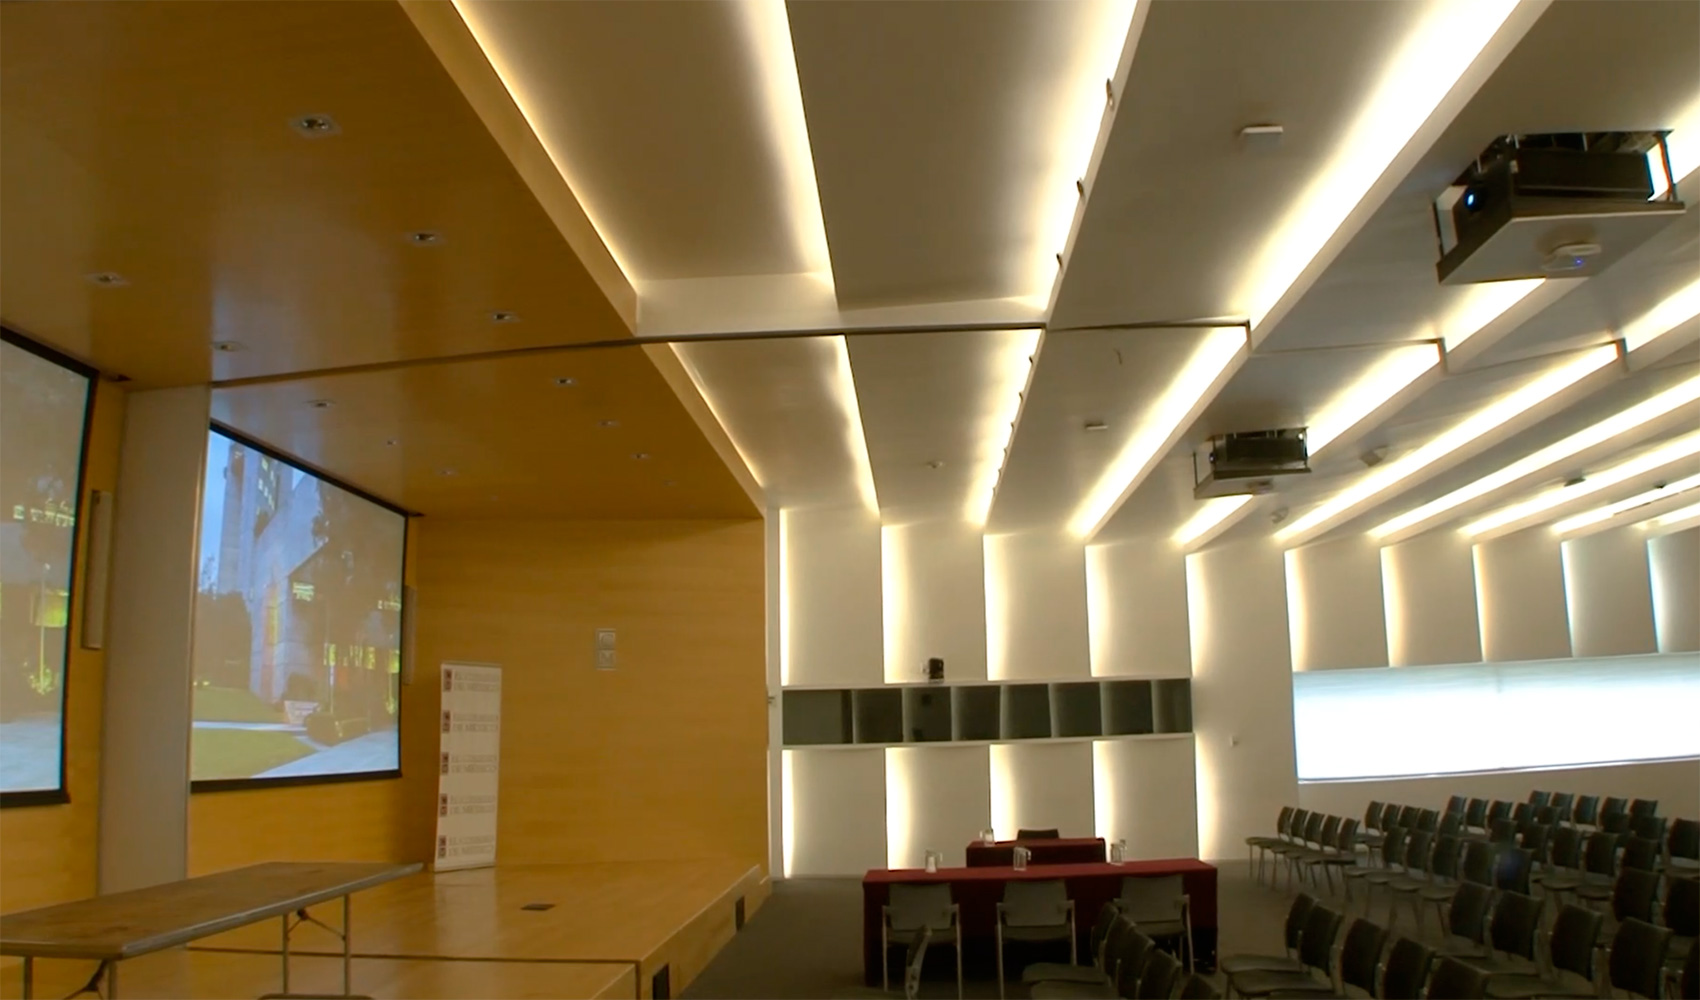 Los proyectores se han ubicado sobre elevadores elctricos en el techo, proyectando en dos pantallas de 189 pulgadas...